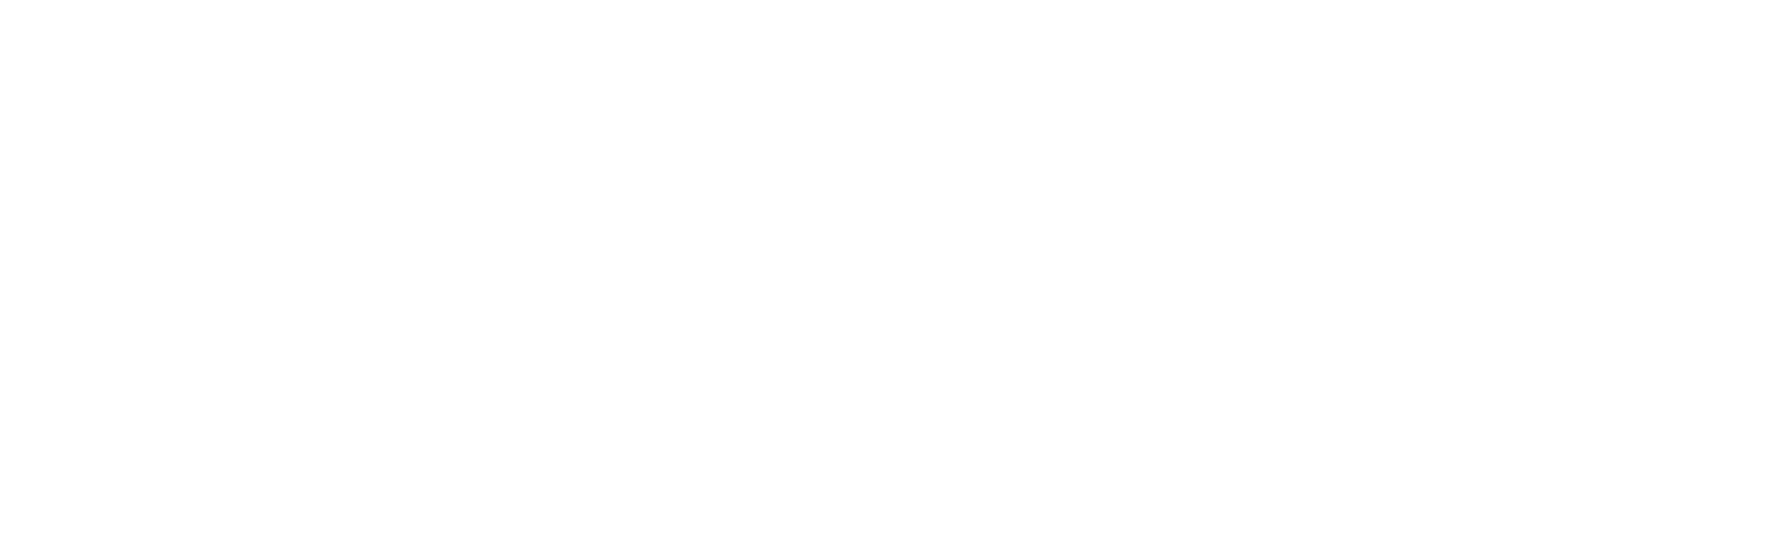 De blije merkontwikkelaar ISSO logo